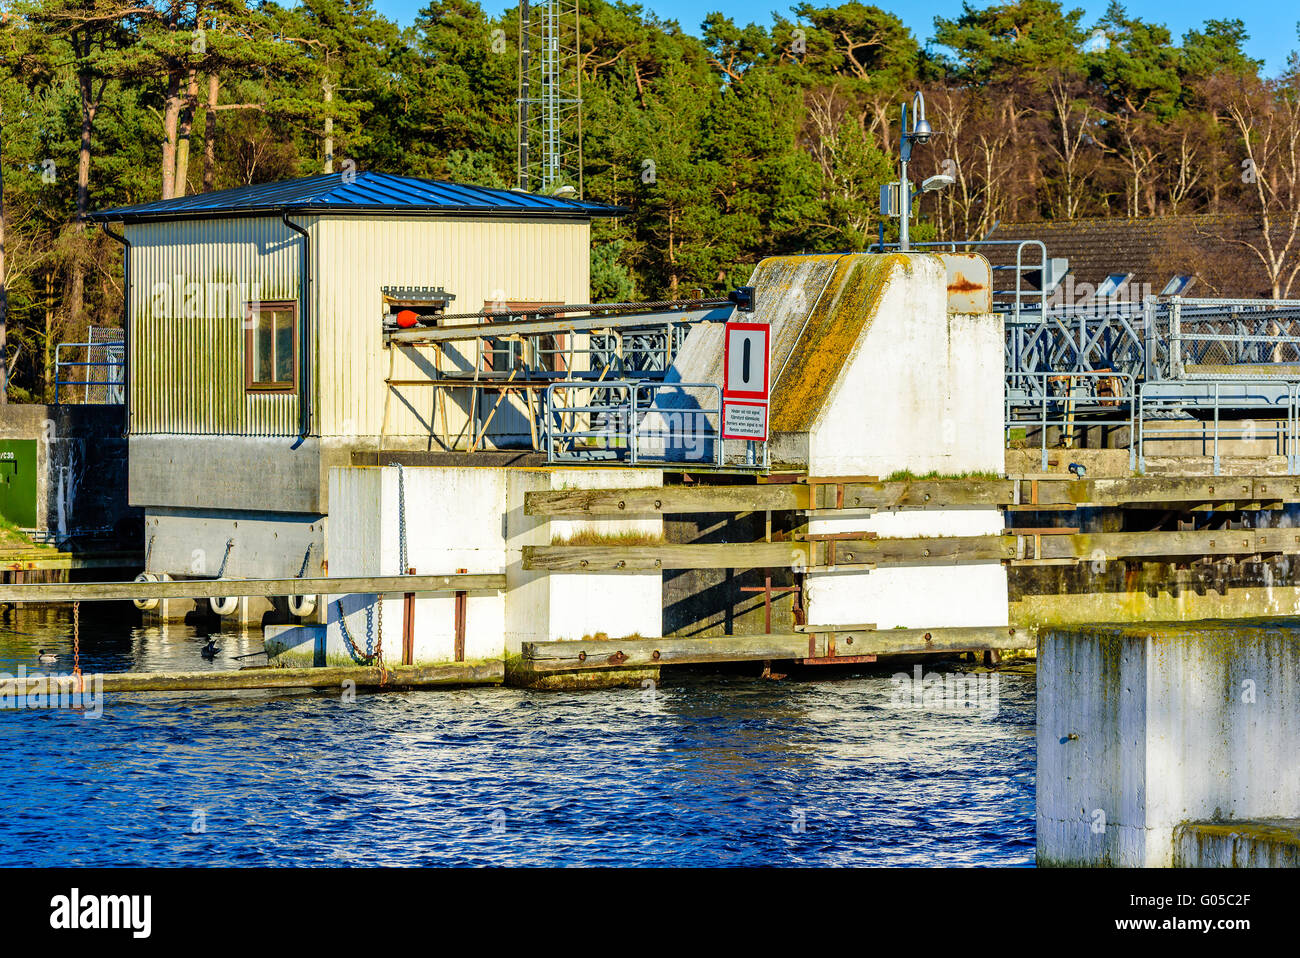 Falsterbo, Schweden - 11. April 2016: Schleuse Maschinenraum am Falsterbo Kanal. Die Schleuse ist ferngesteuert. Die hölzernen Bui Stockfoto